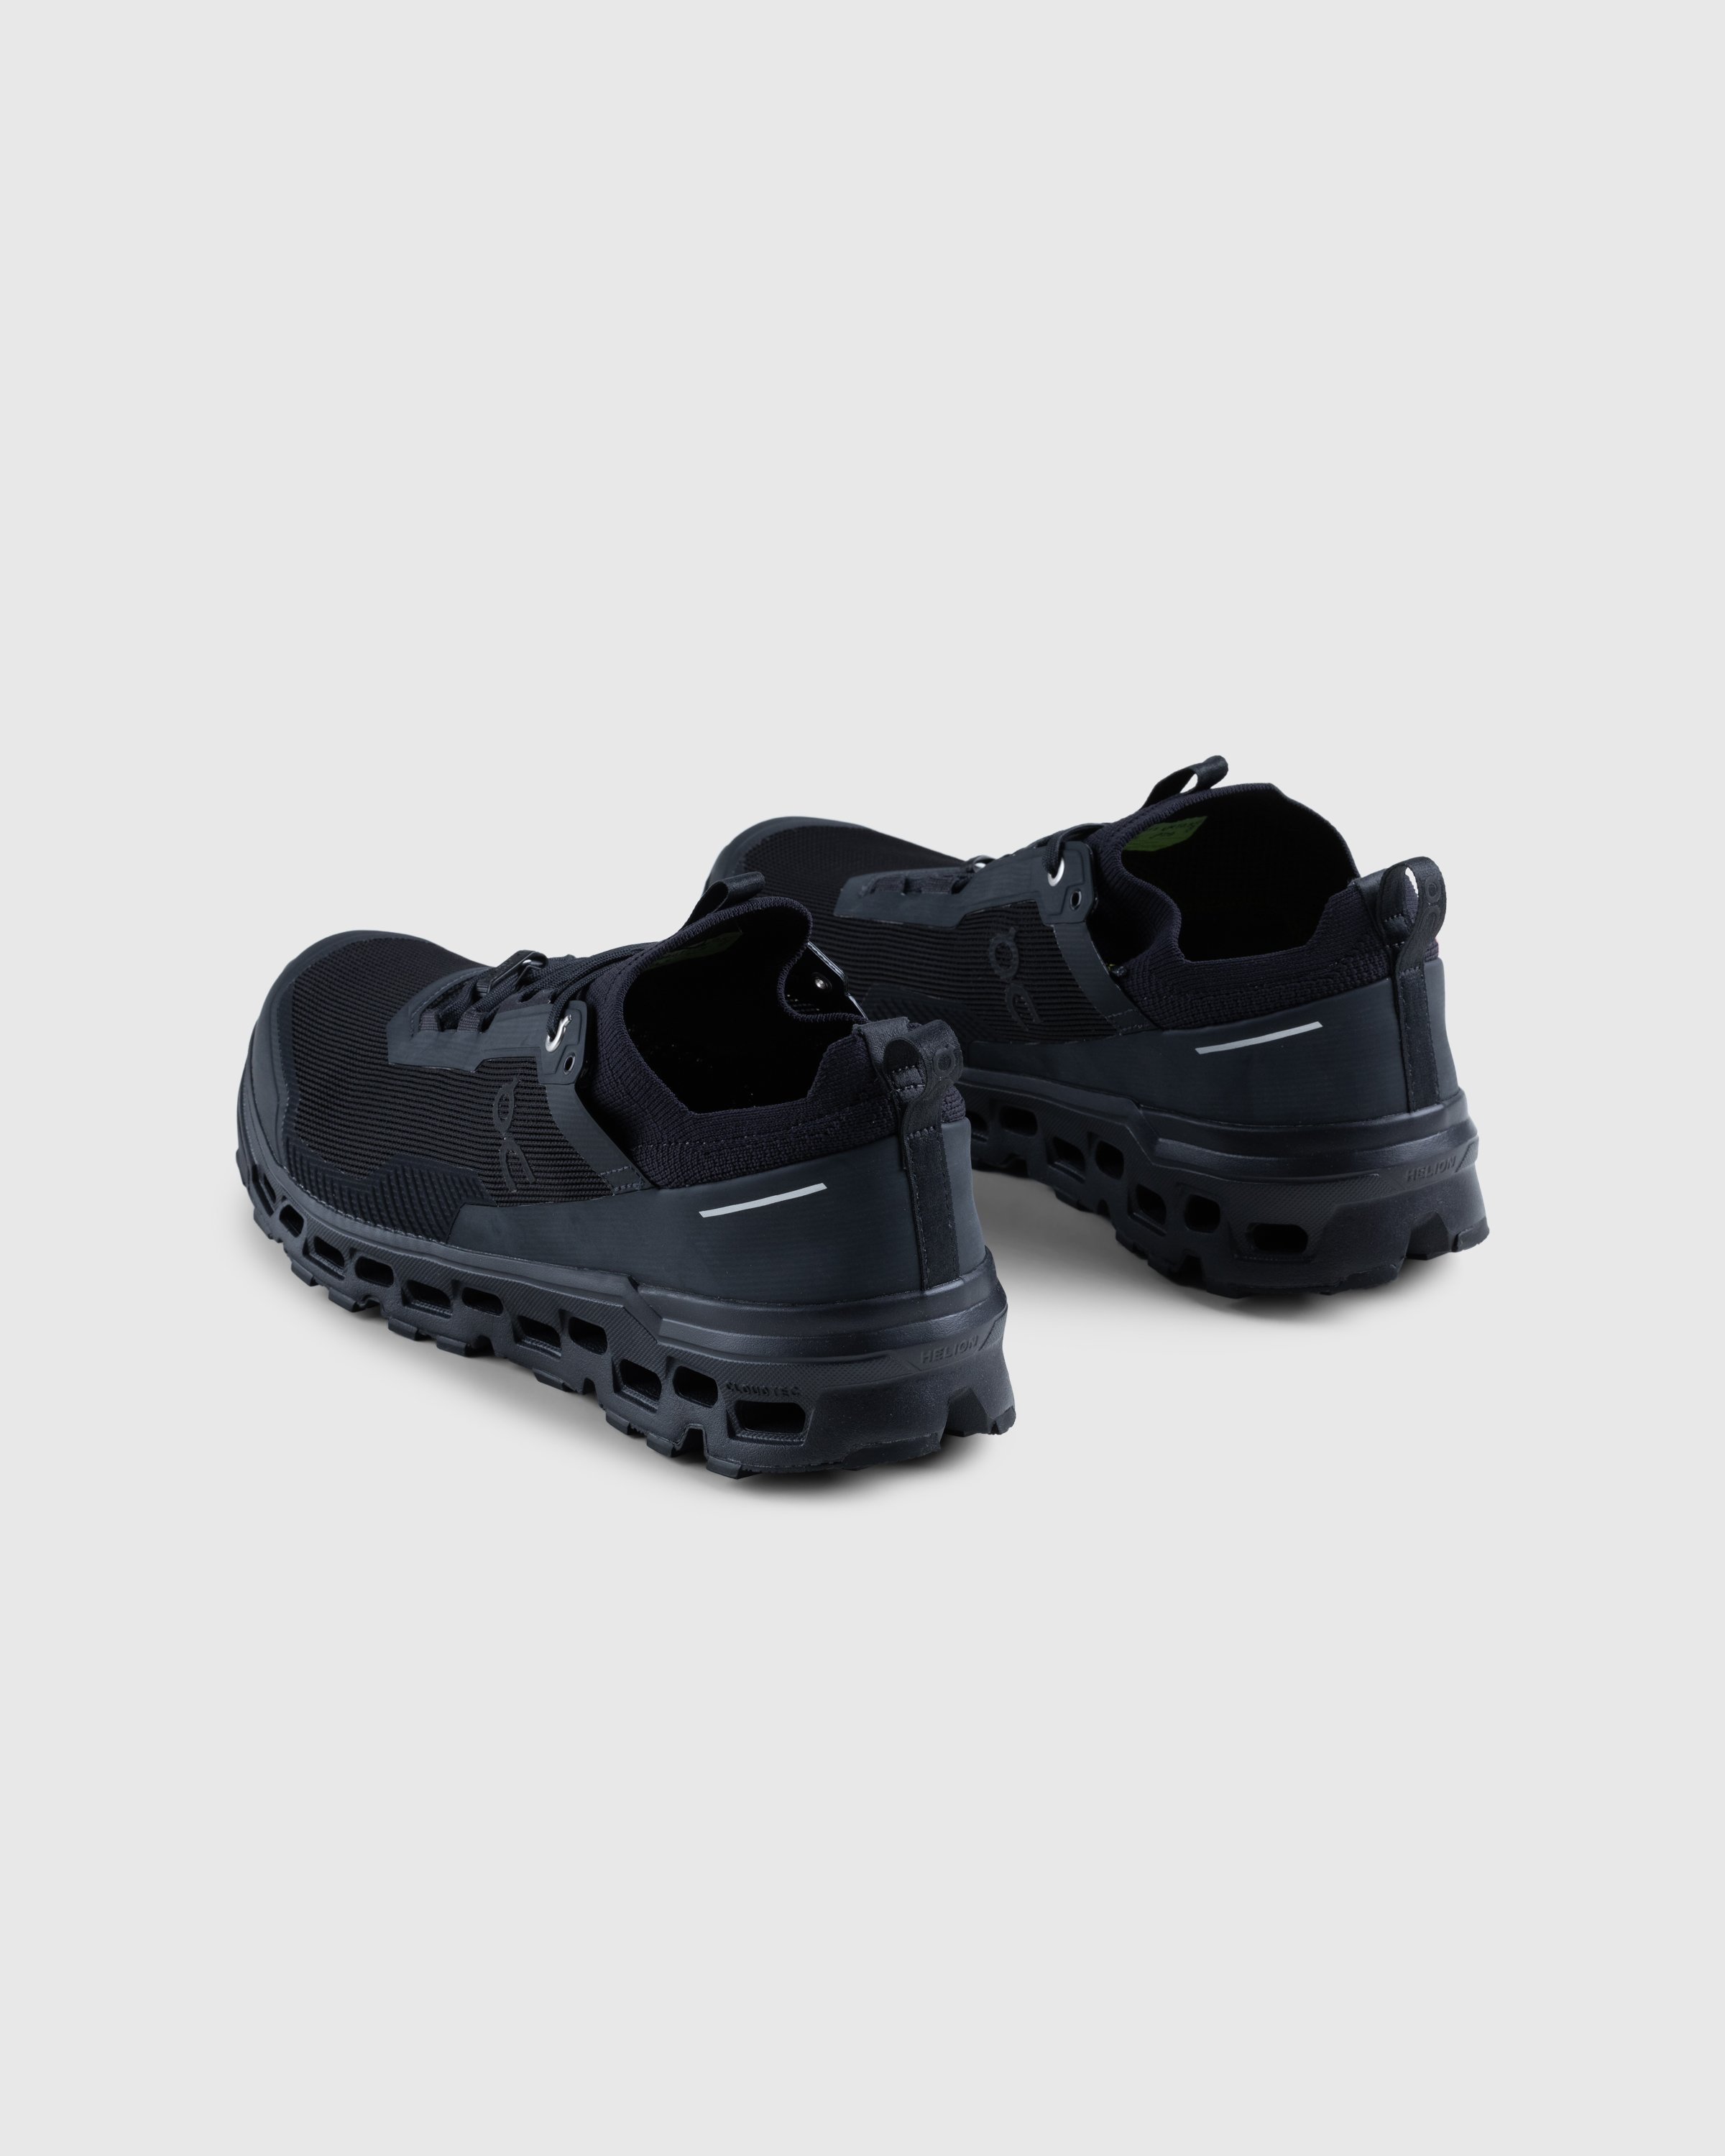 On - Cloudultra 2 Black - Footwear - Black - Image 4